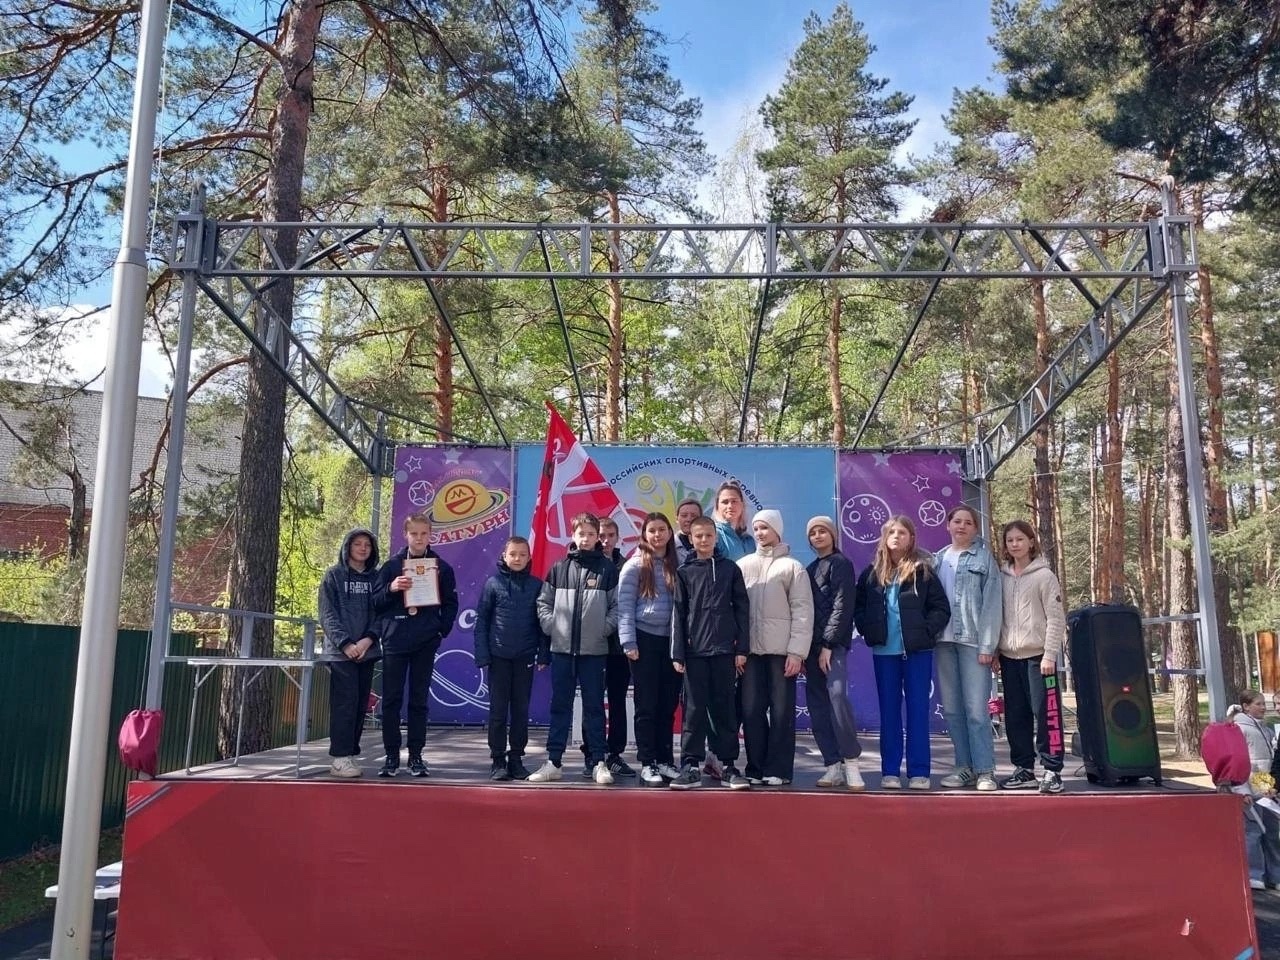 Региональный этап Всероссийских спортивных соревнований школьников «Президентские состязания».